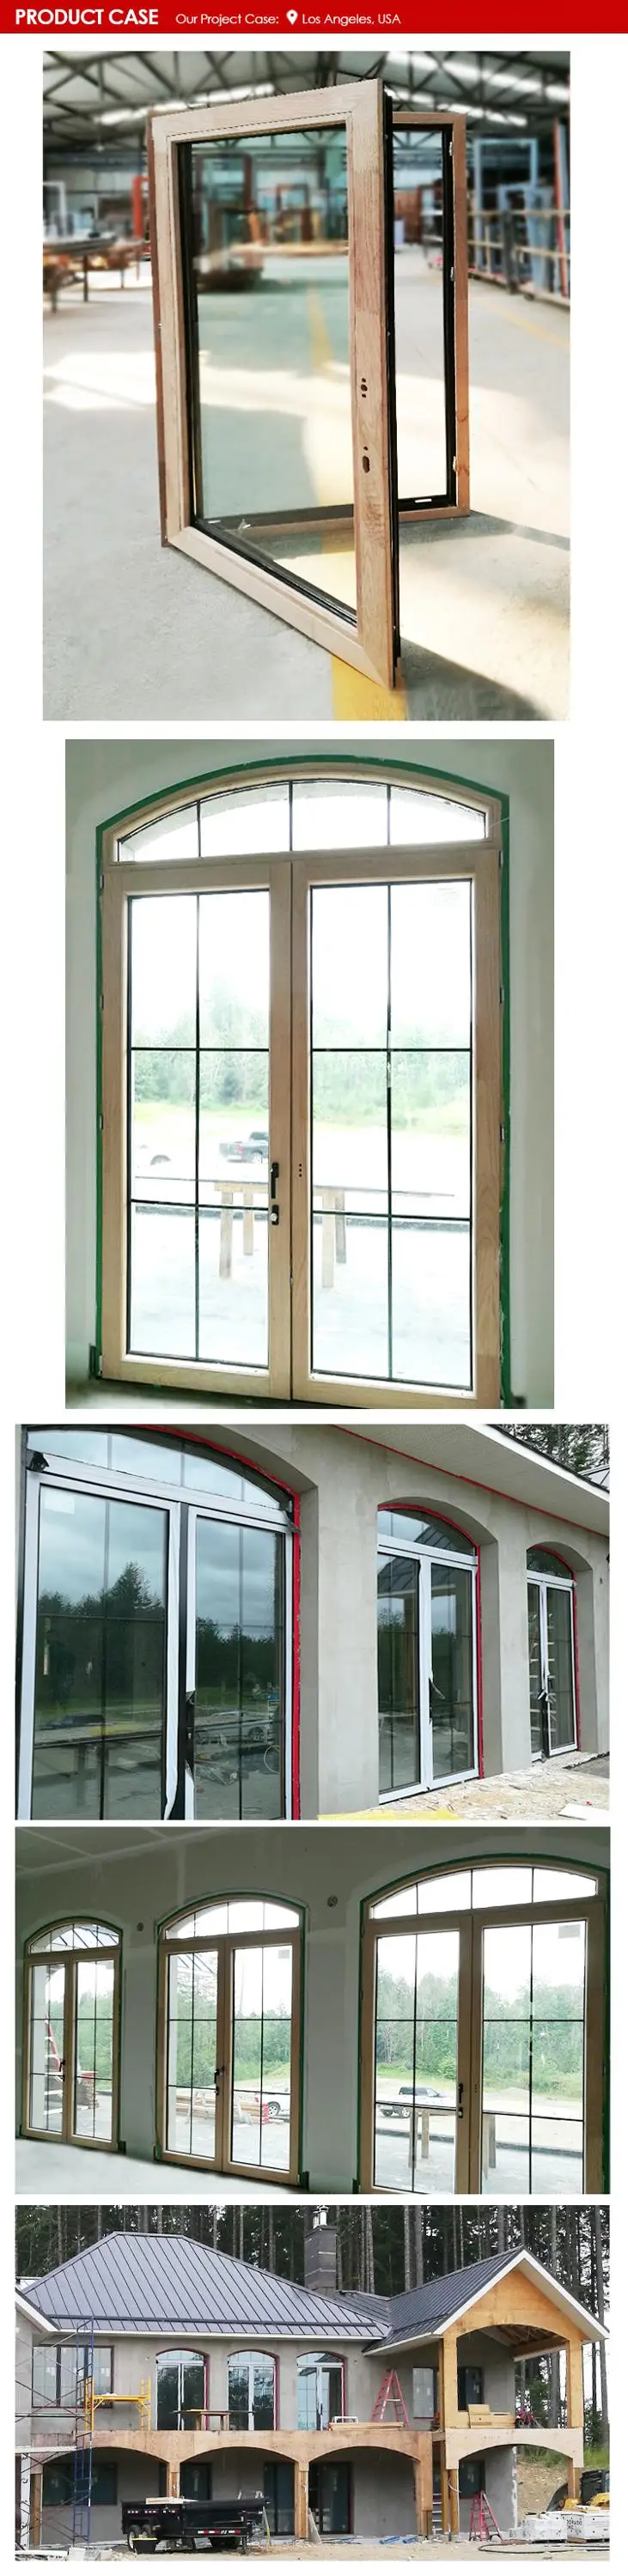 Dallas external solid hardwood doors exterior wood with glass panels door slab